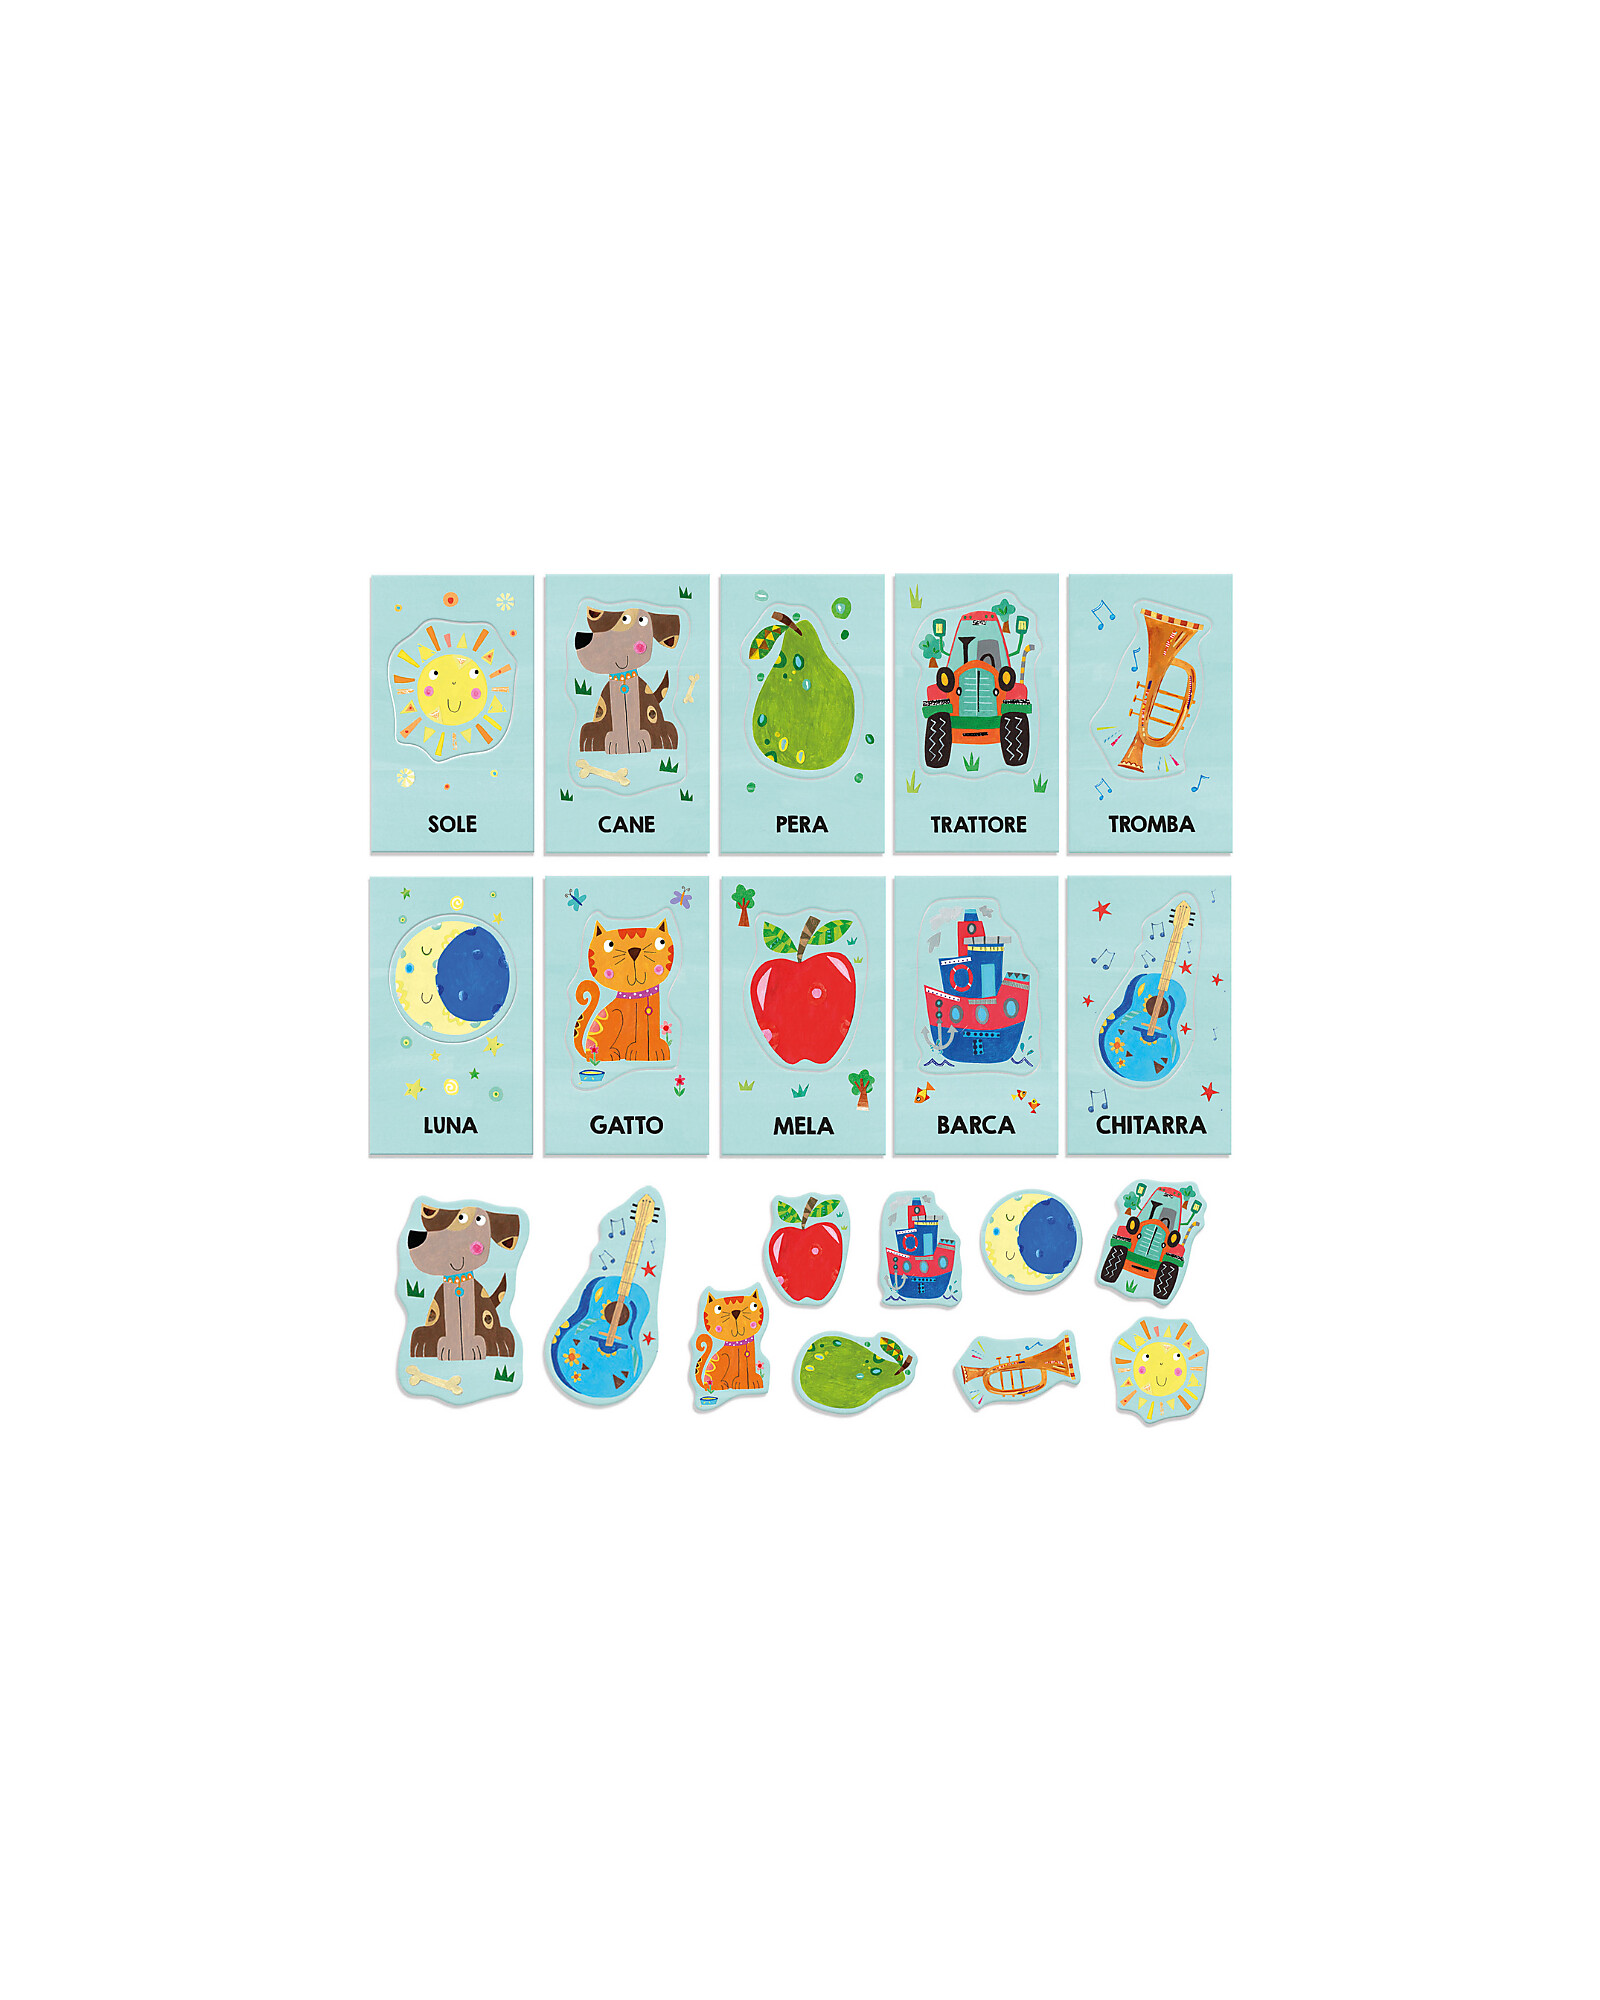 Headu Montessori Baby Flashcards - Linguistic Intelligence - 12 Cards  unisex (bambini)